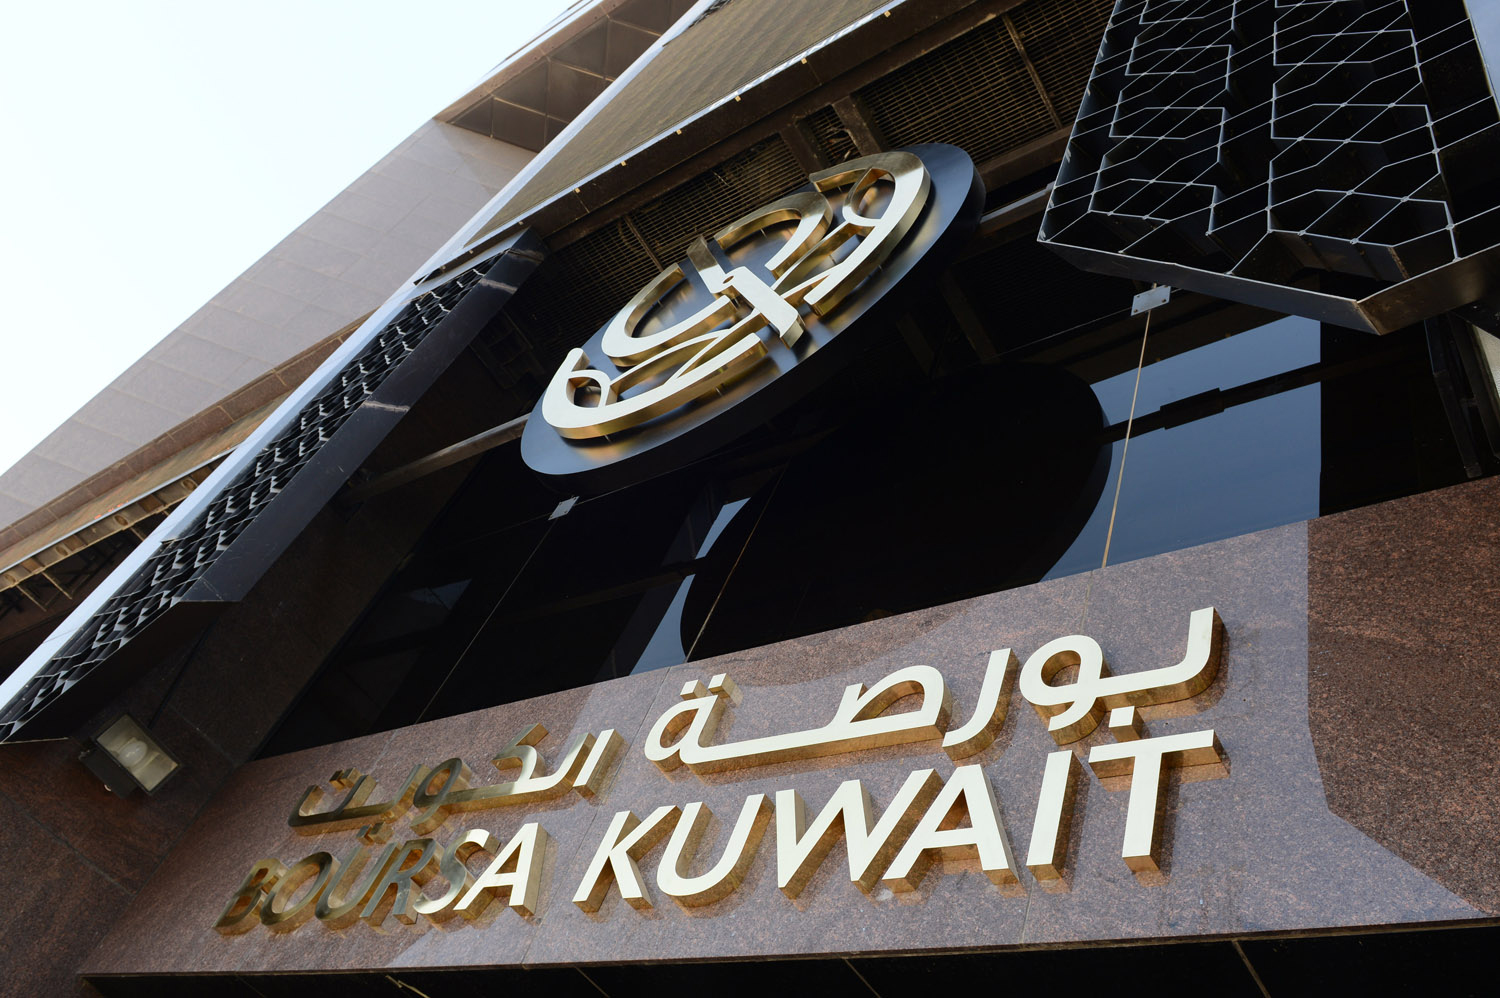 بورصة الكويت تغلق تعاملاتها على ارتفاع المؤشر العام 6ر10 نقطة ليبلغ مستوى 45ر6368 نقطة بنسبة صعود 17ر0 في المئة وبقيمة 2ر30 مليون دينار                                                                                                                   